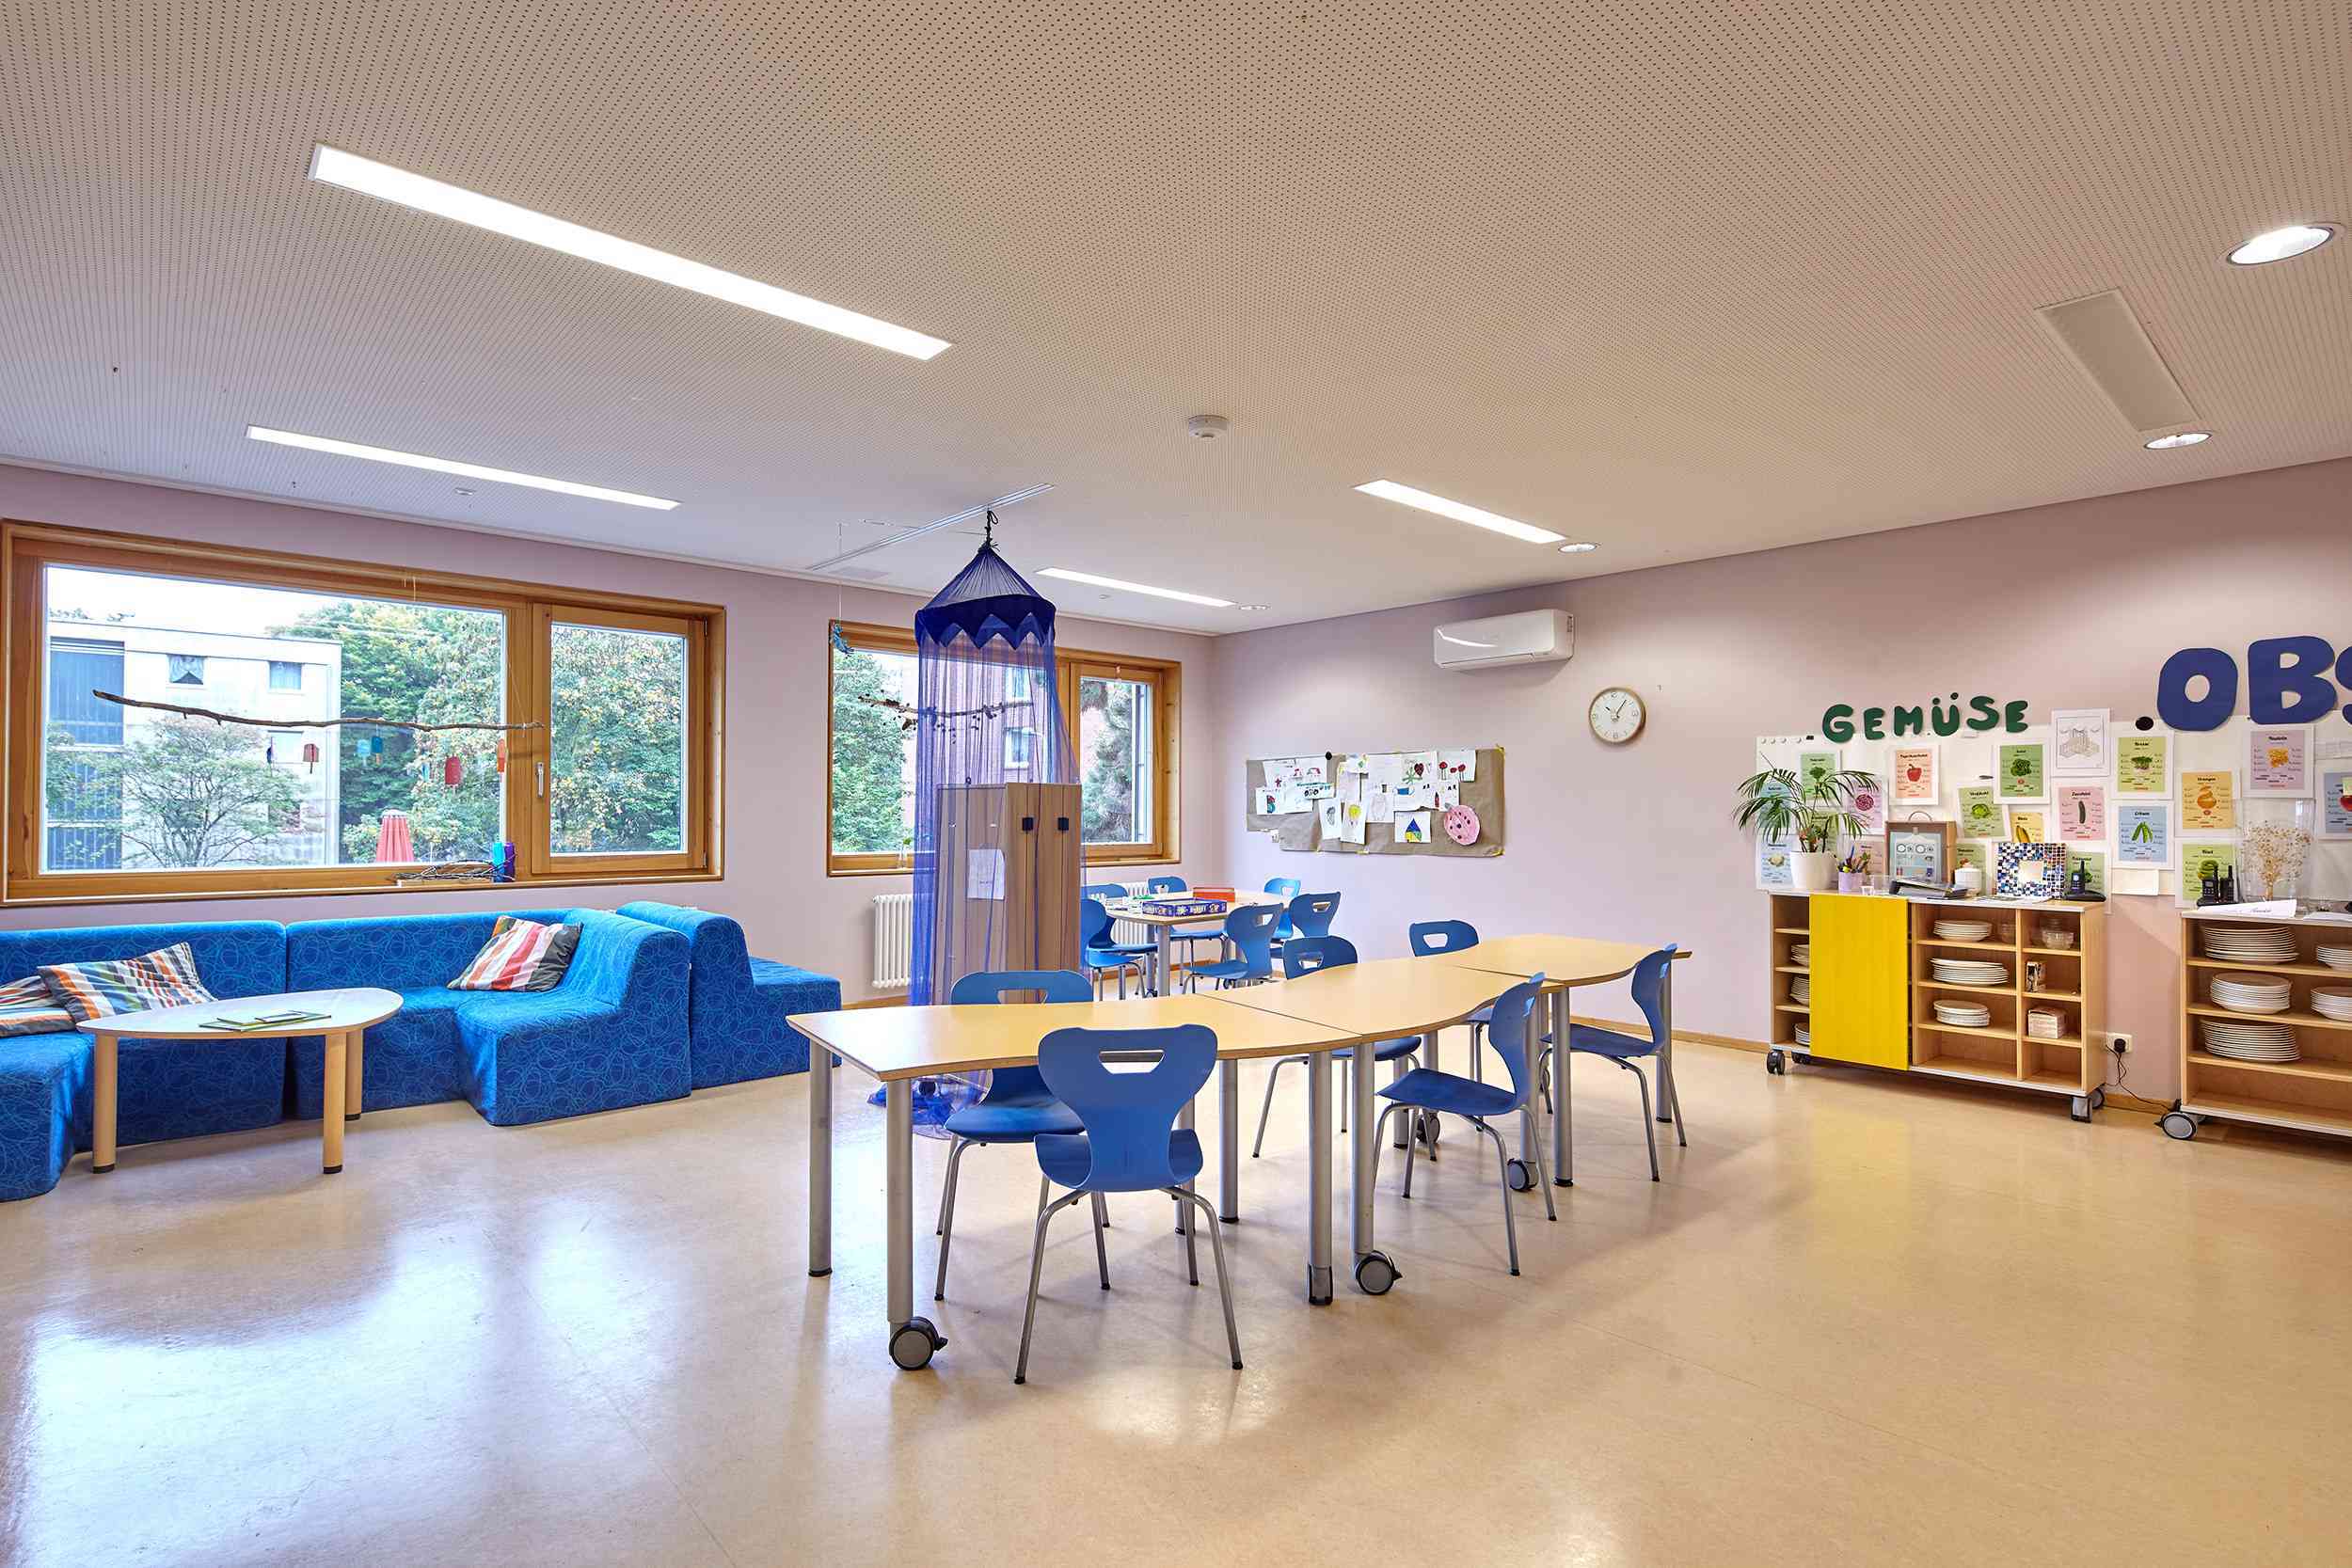 Innenbereich im Kinderzentrum Gerhart-Hauptmann-Ring 400a